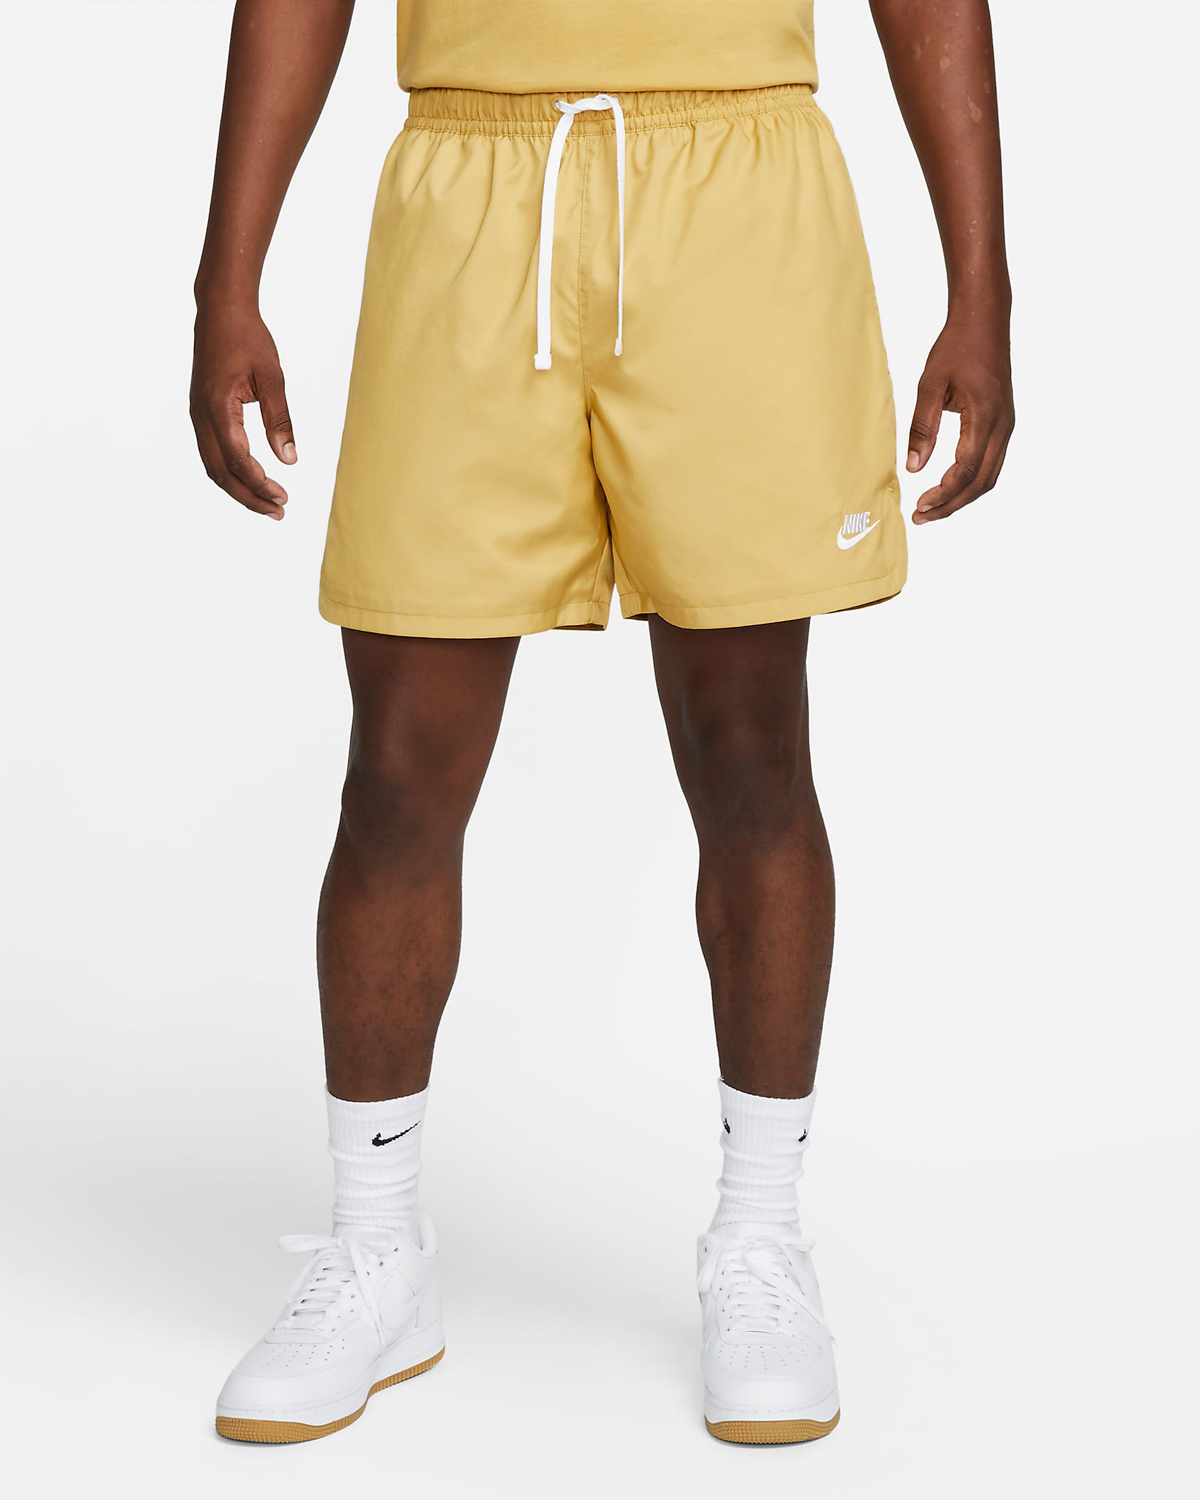 Nike-Sportswear-Woven-Flow-Shorts-Wheat-Gold